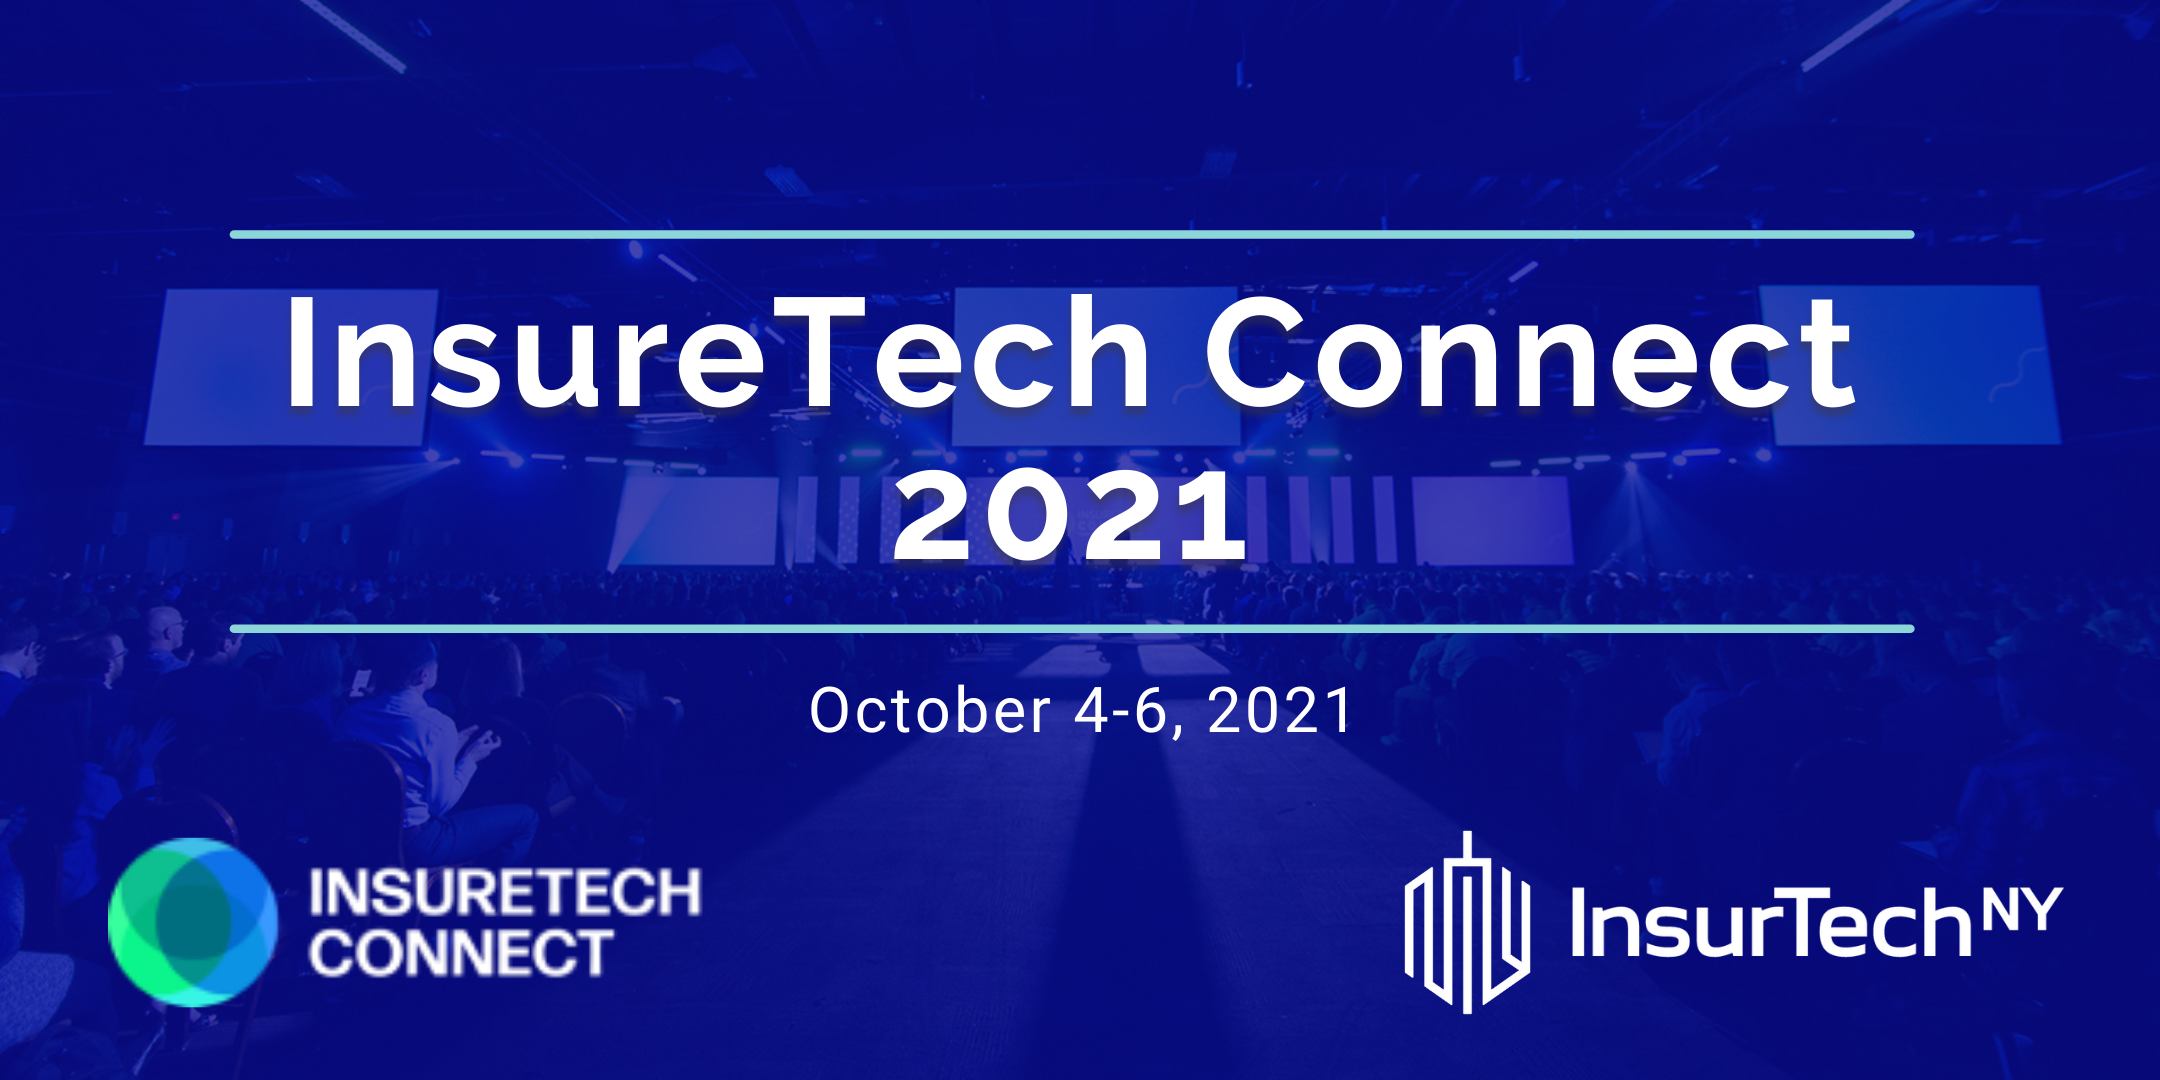 Insuretech Connect 2021